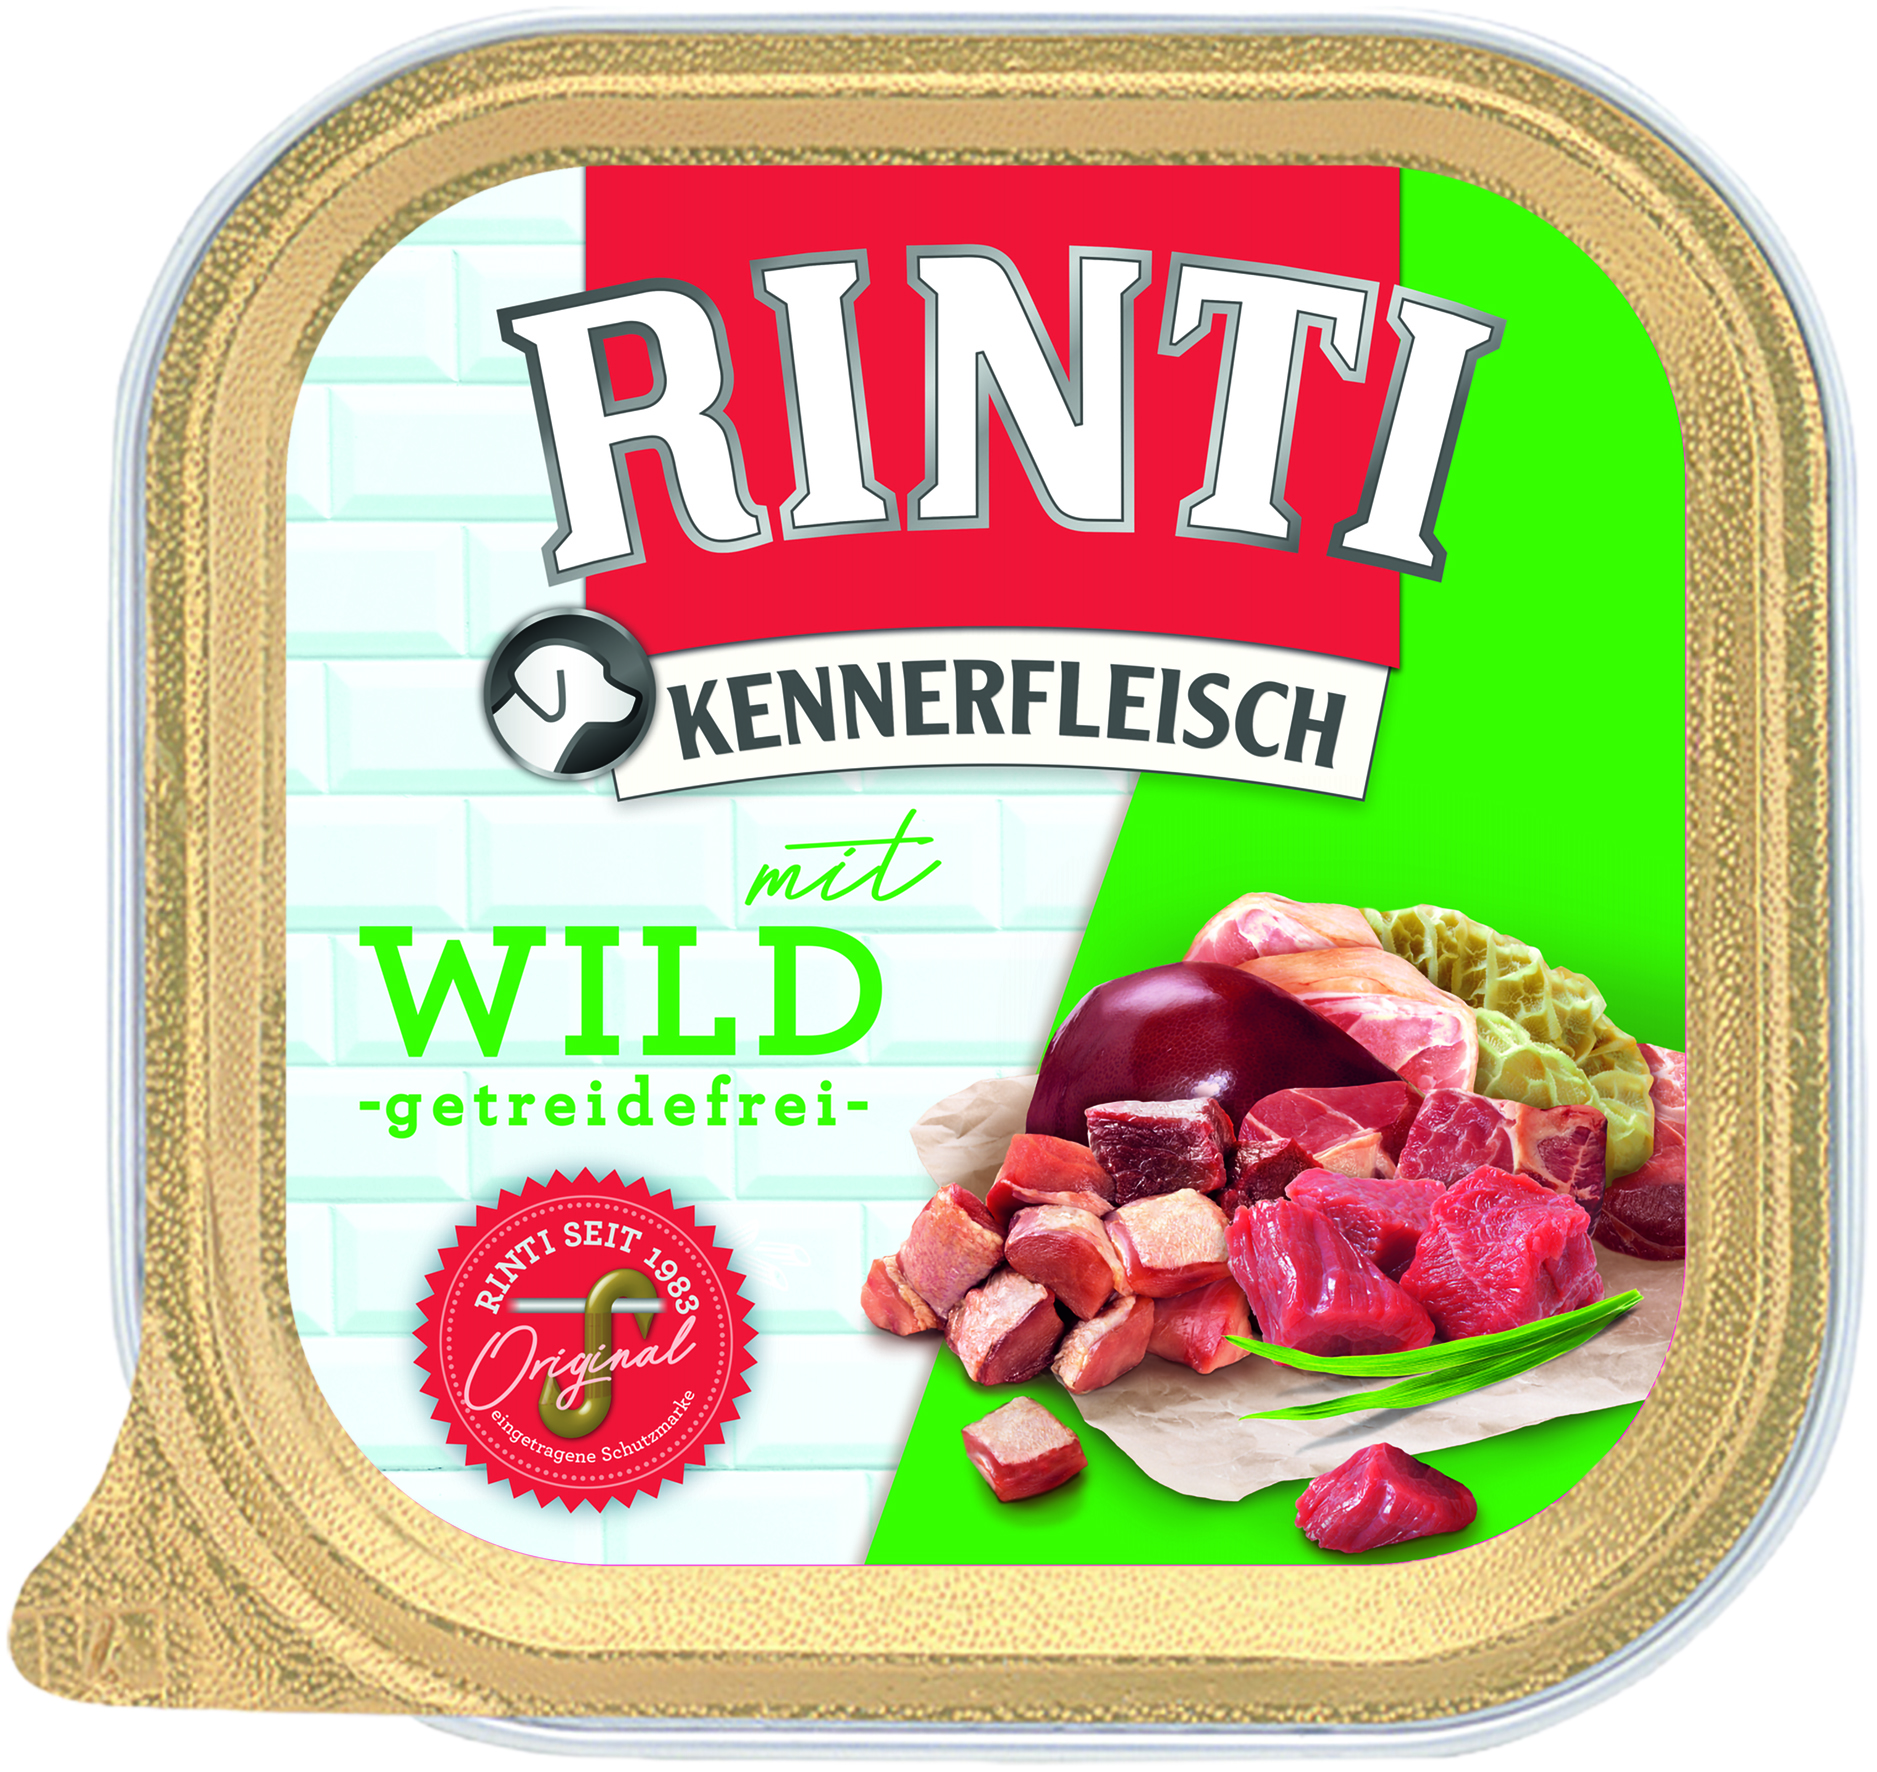 Rinti Kennerfleisch Plus Wild 300g